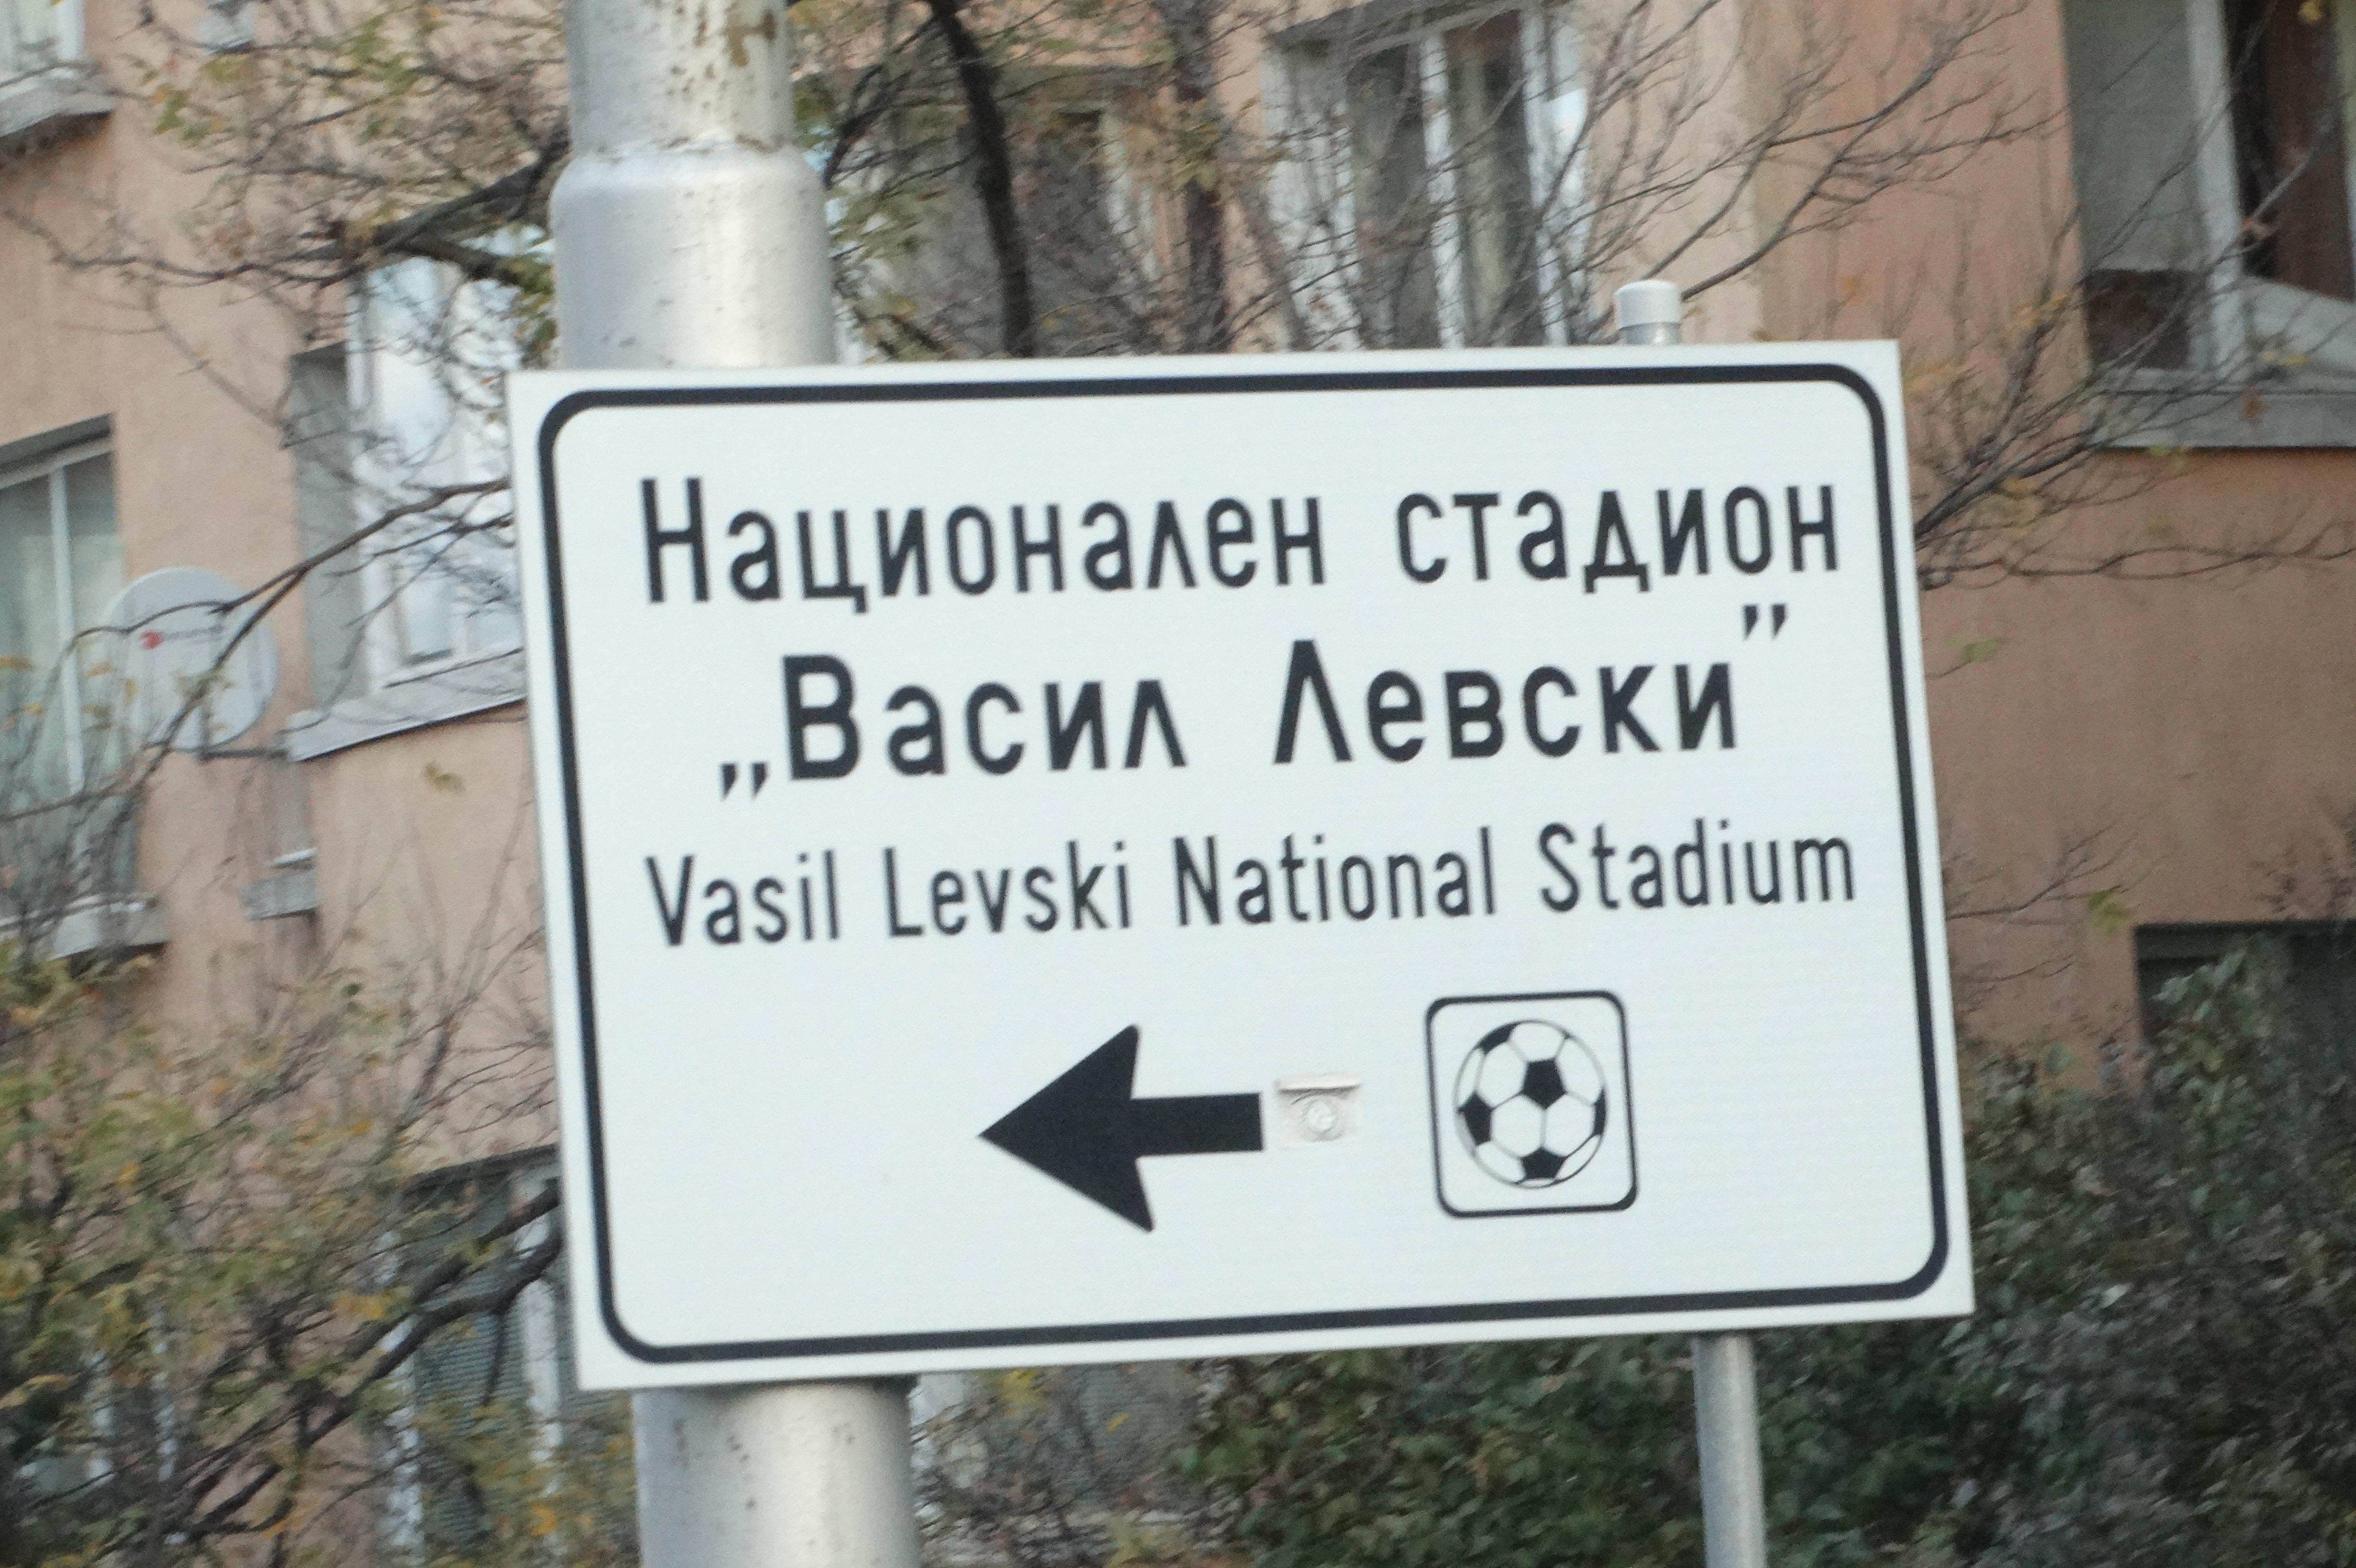 Национален стадион "Васил Левски"